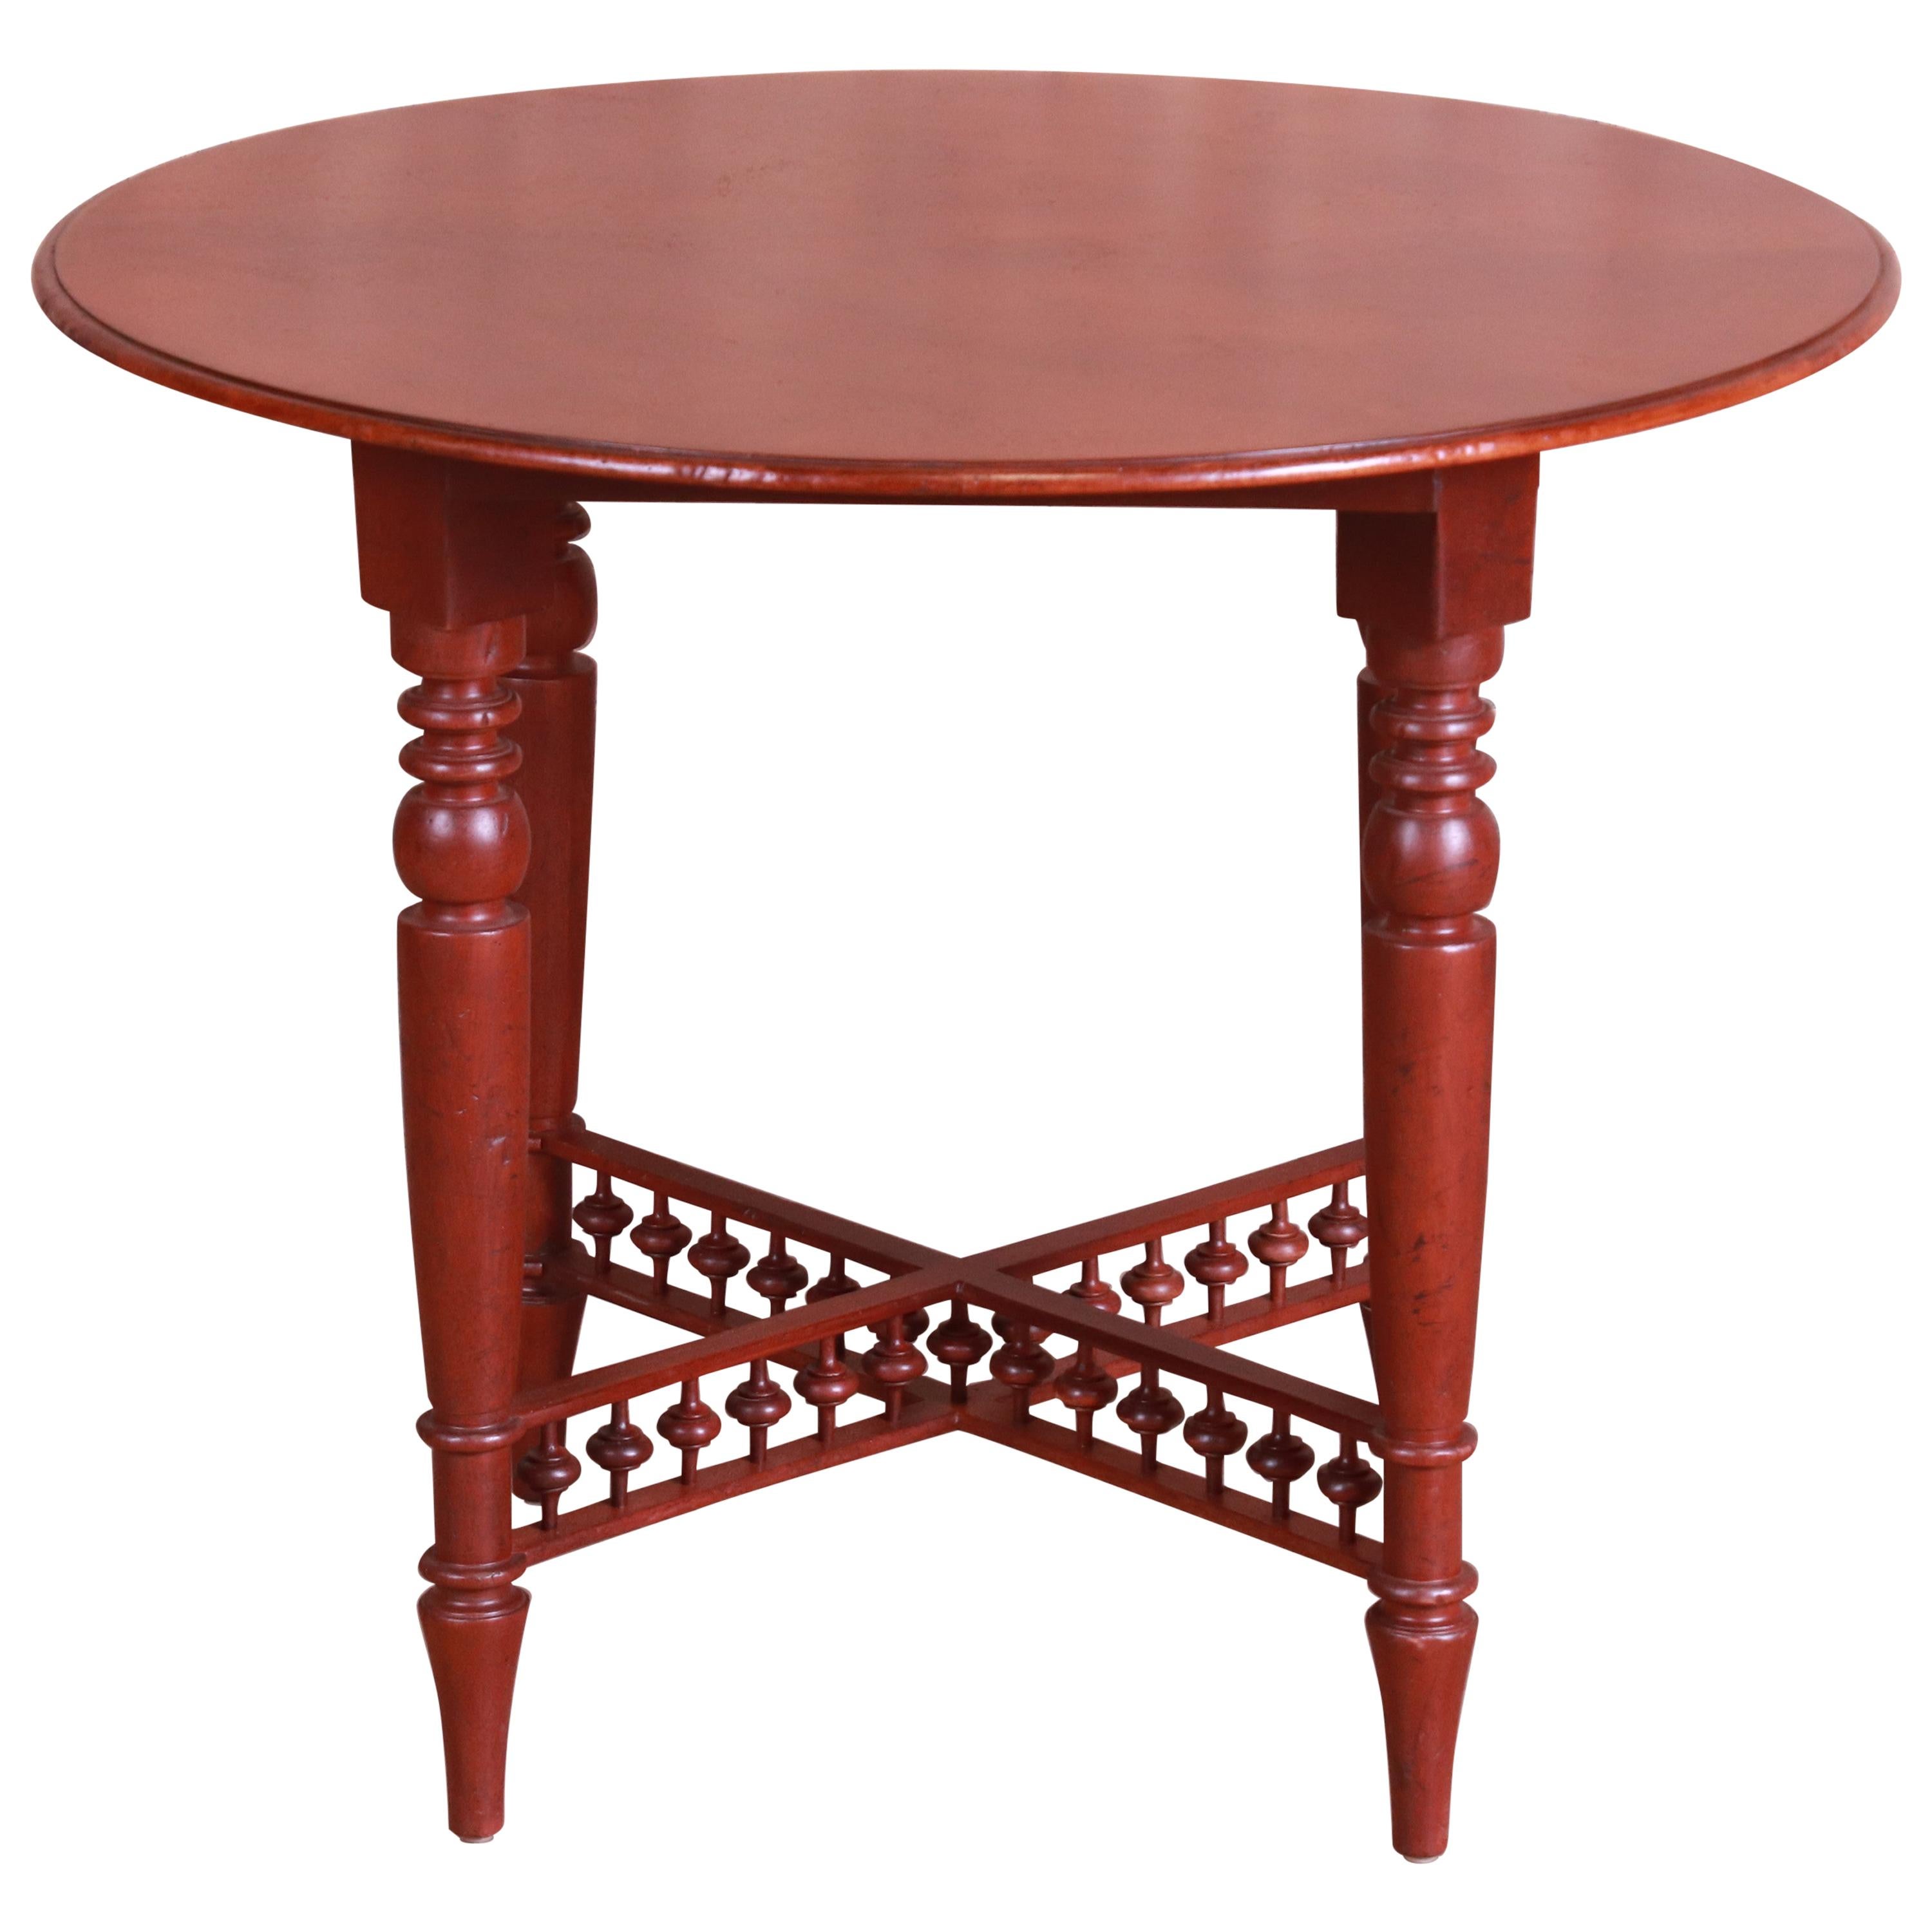 Table à thé en acajou sculpté de style colonial américain, Baker Furniture Milling Road